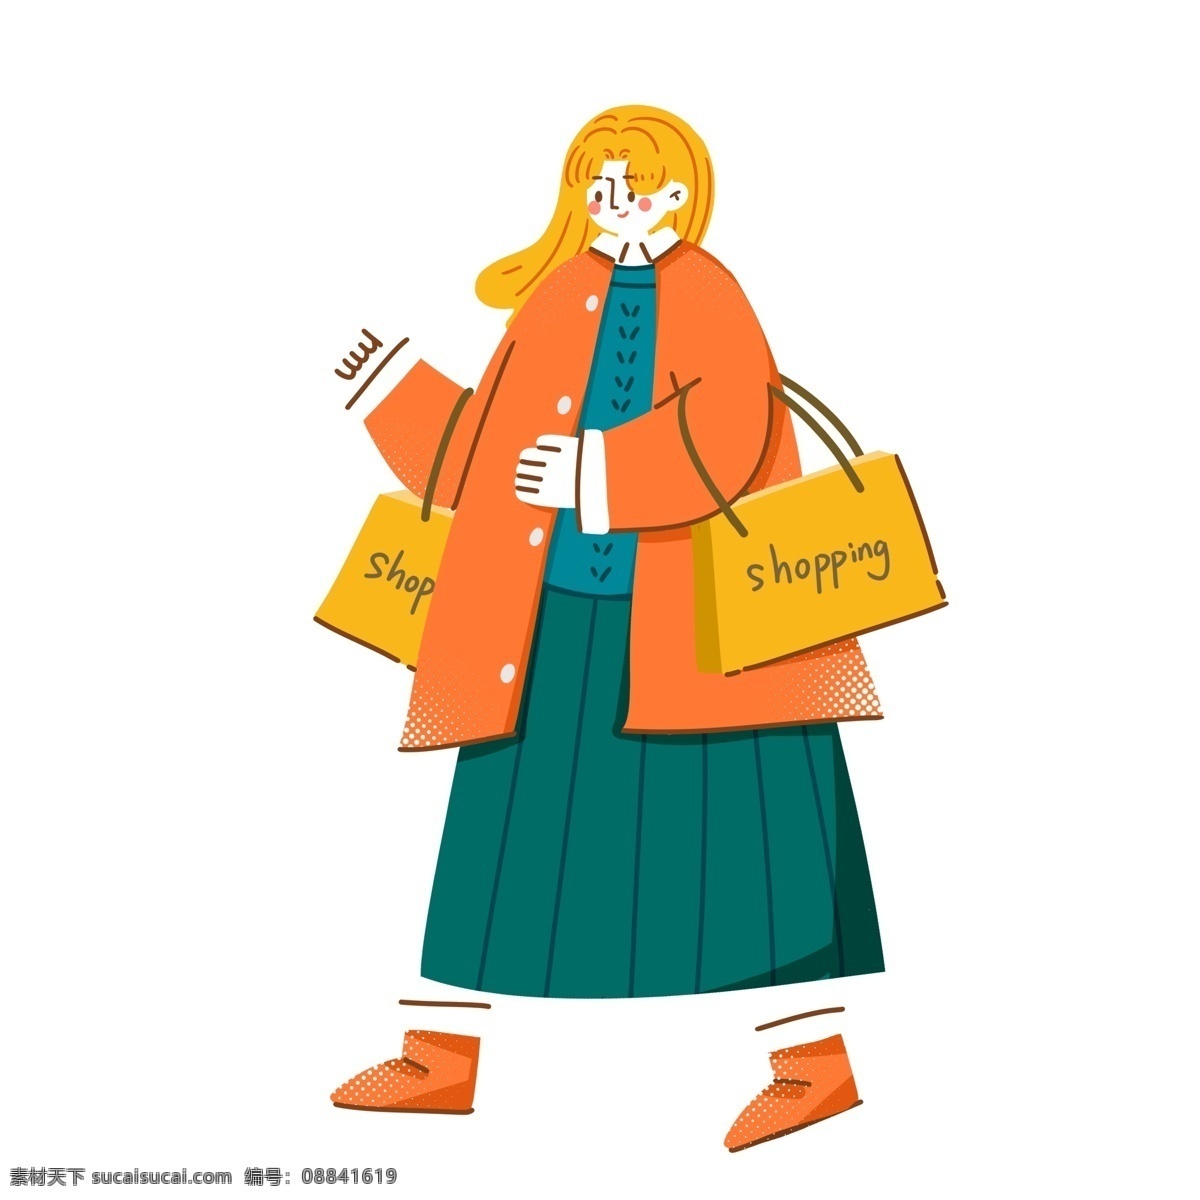 卡通 手绘 购物 女孩子 插画 人物 女孩 逛街 女生 购物袋 shopping